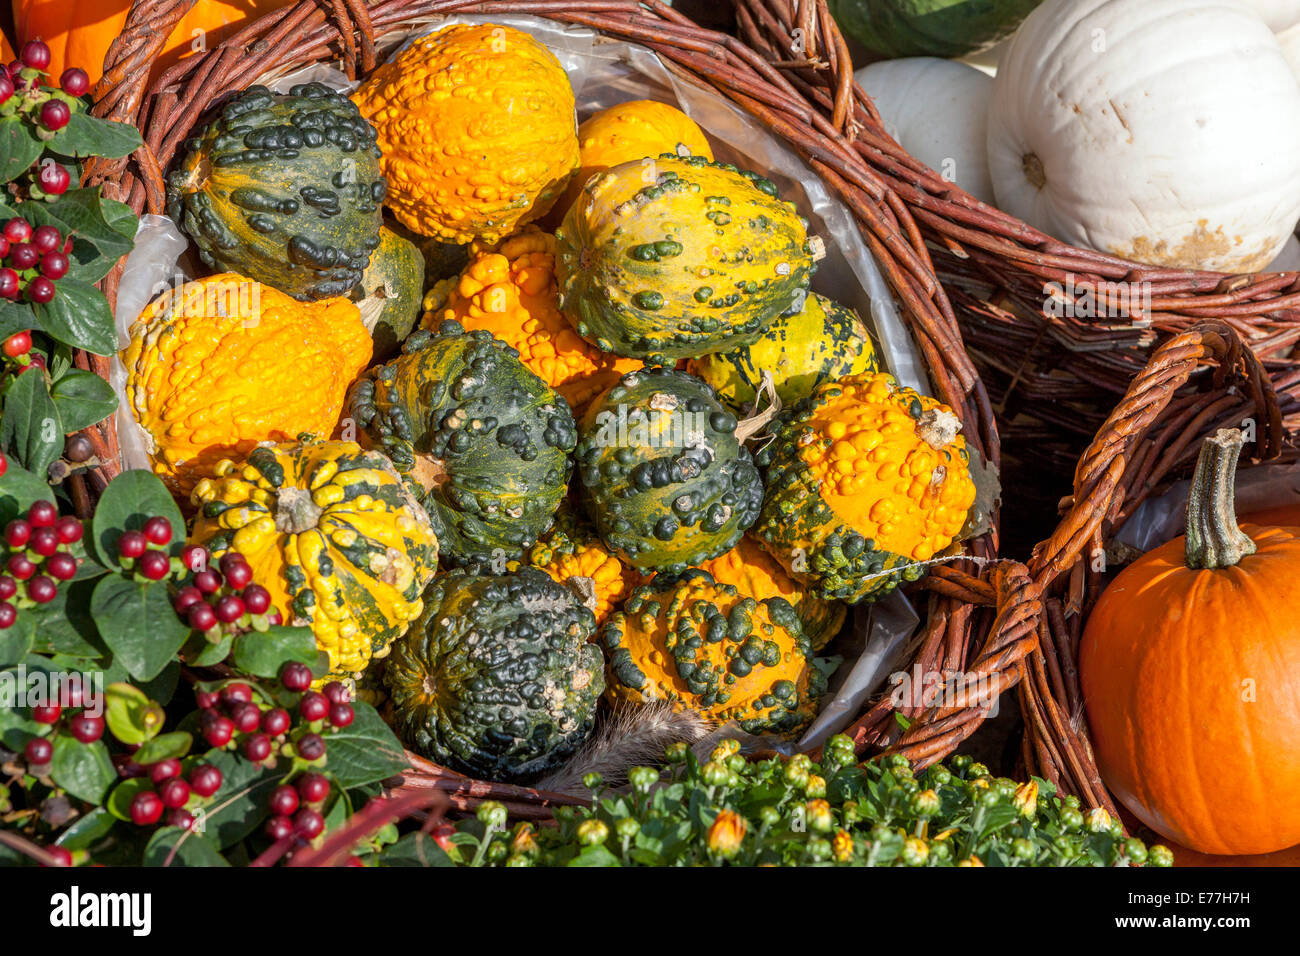 Calabazas de la tienda Ornamental gourds otoño Decorativo de la exhibición Cucurbita pepo en la cesta Foto de stock